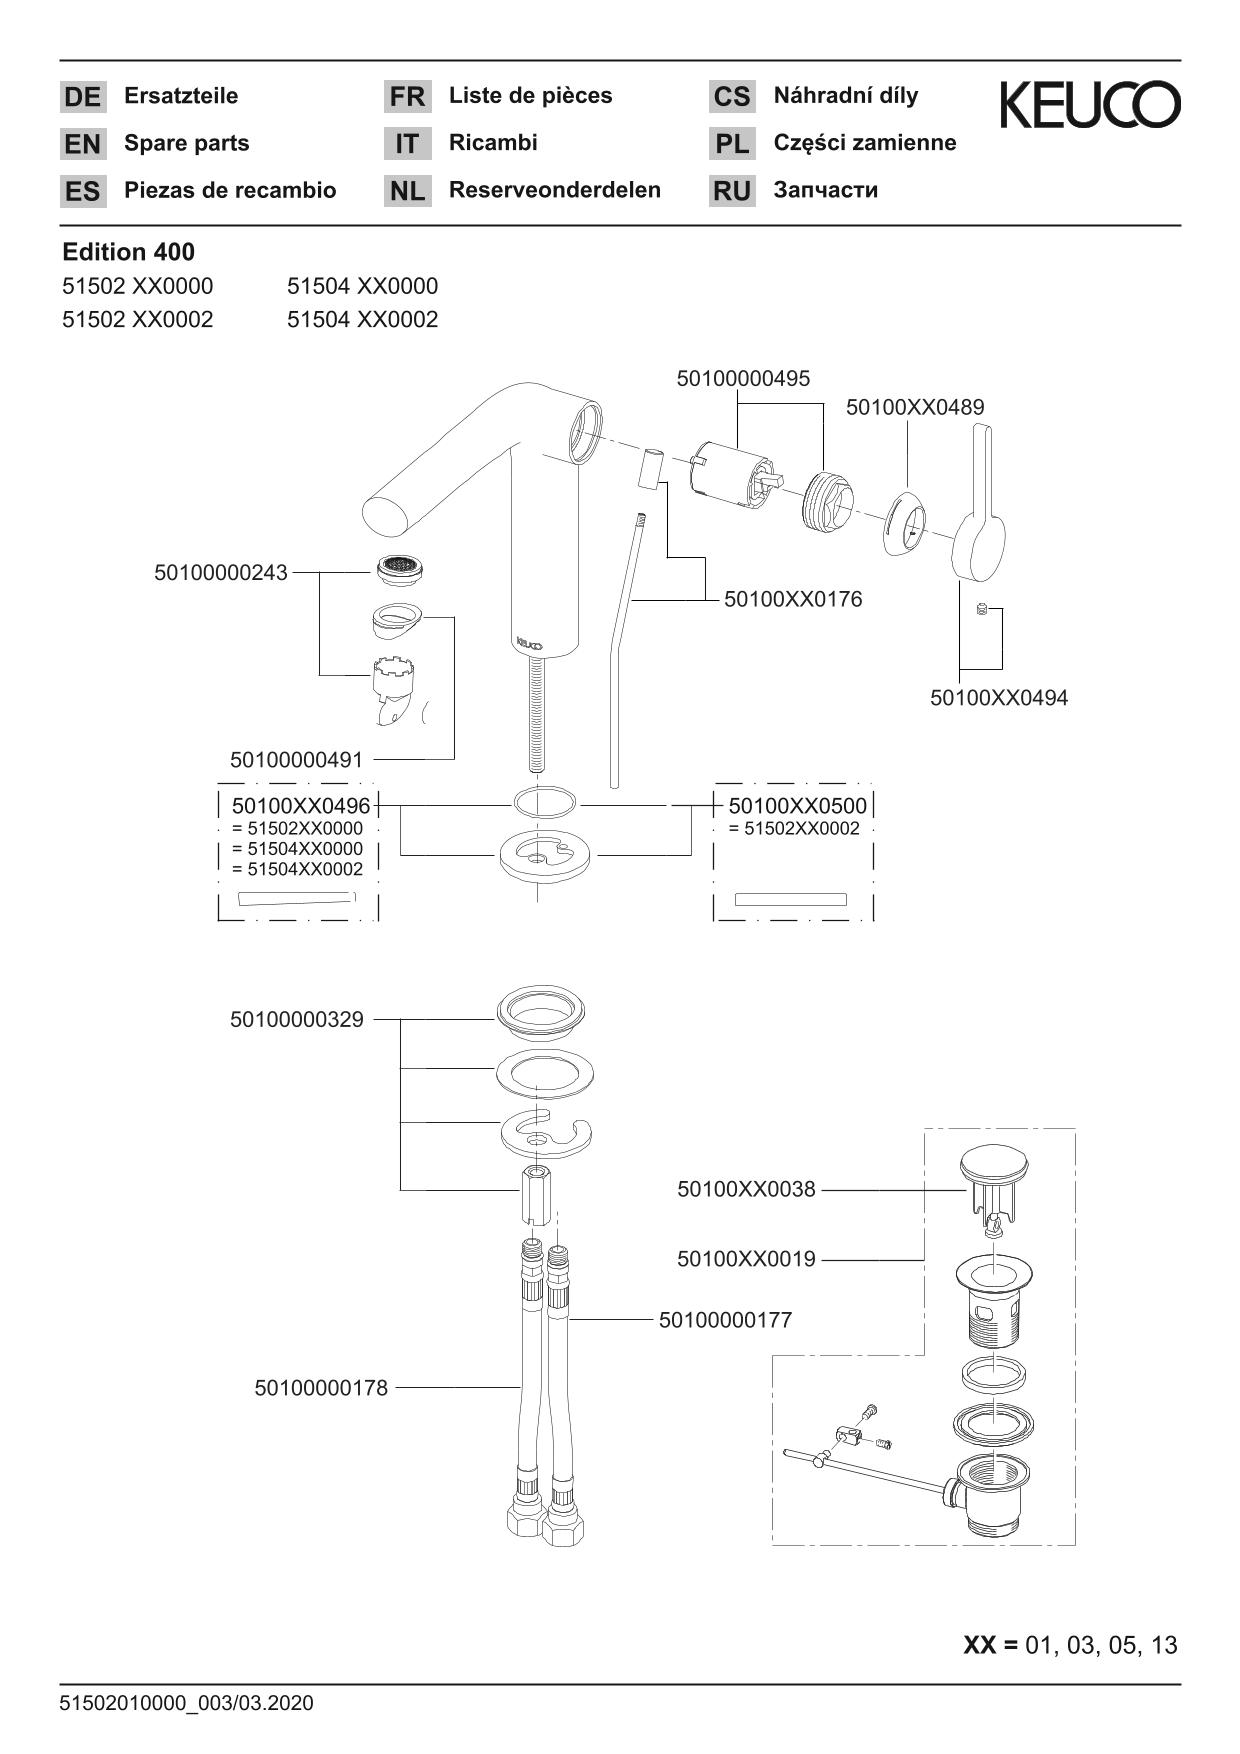 Edition 400 51504030002 Einhebel-Waschtischmischer 120 mit Zugstangen-Ablaufgarnitur Bronze gebürstet